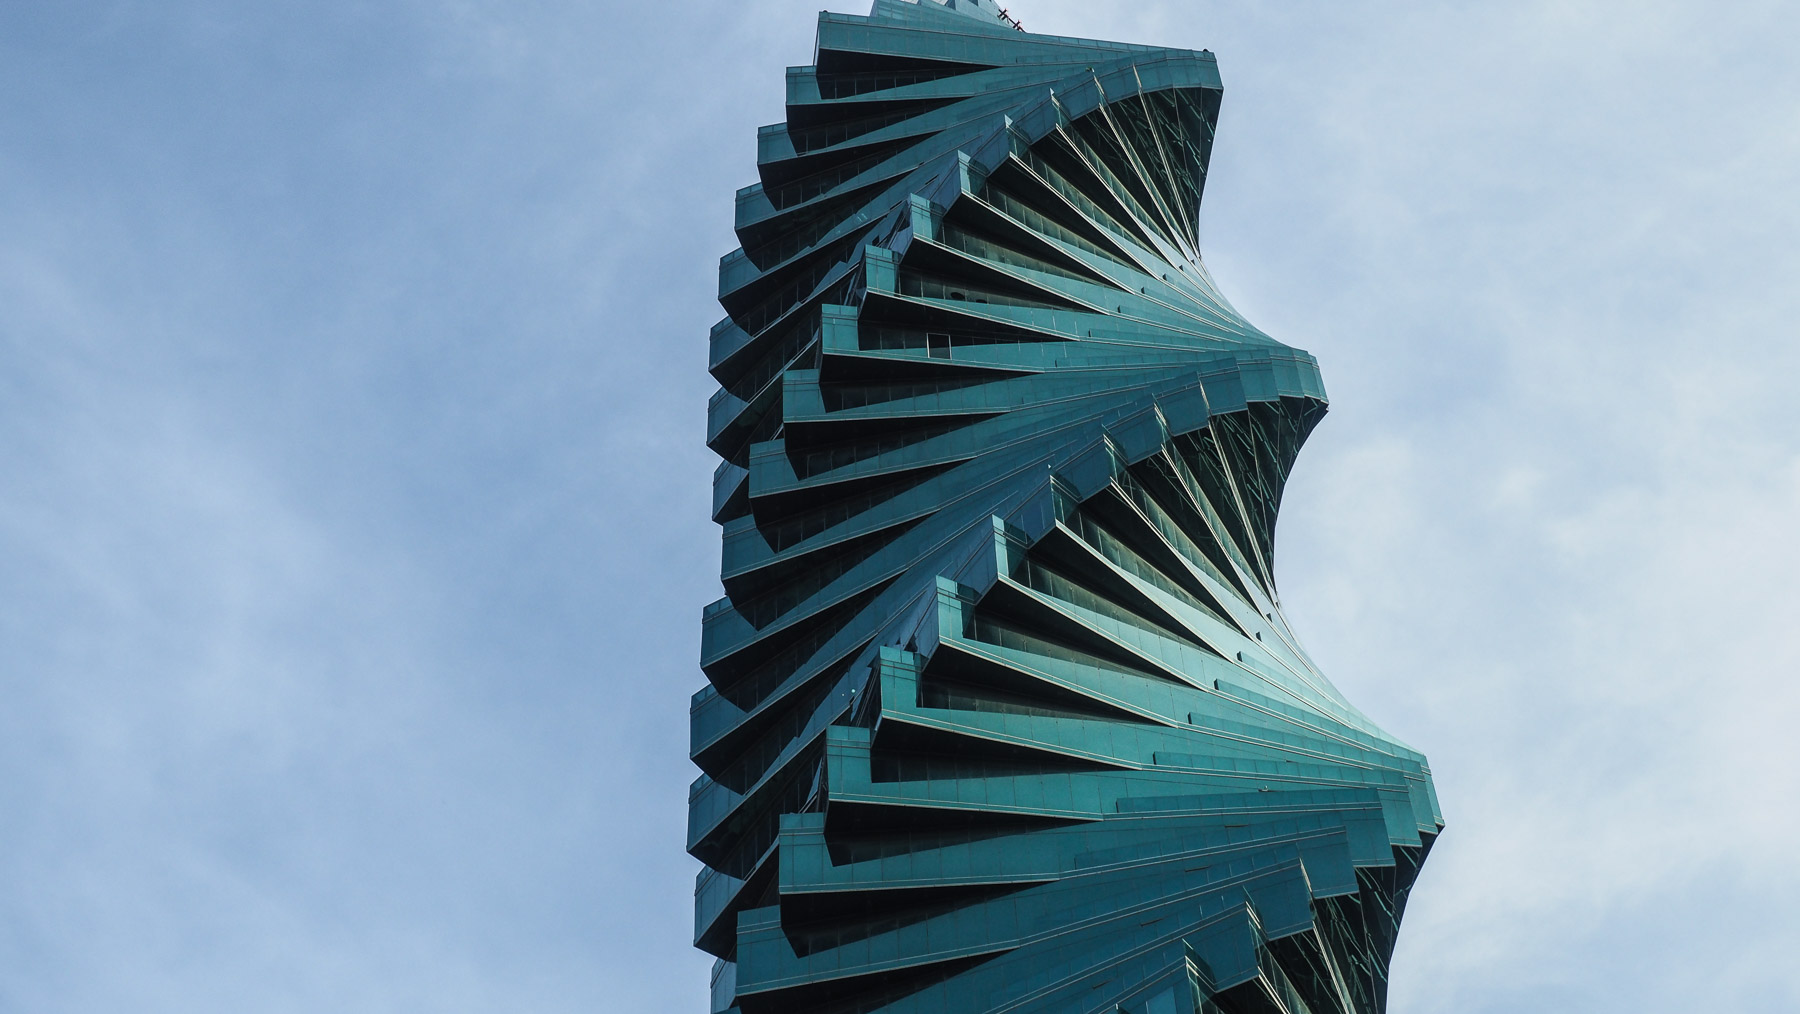 Der F&F Tower ist ein riesengroßer spiralförmiger Wolkenkratzer, 243 Meter hoch